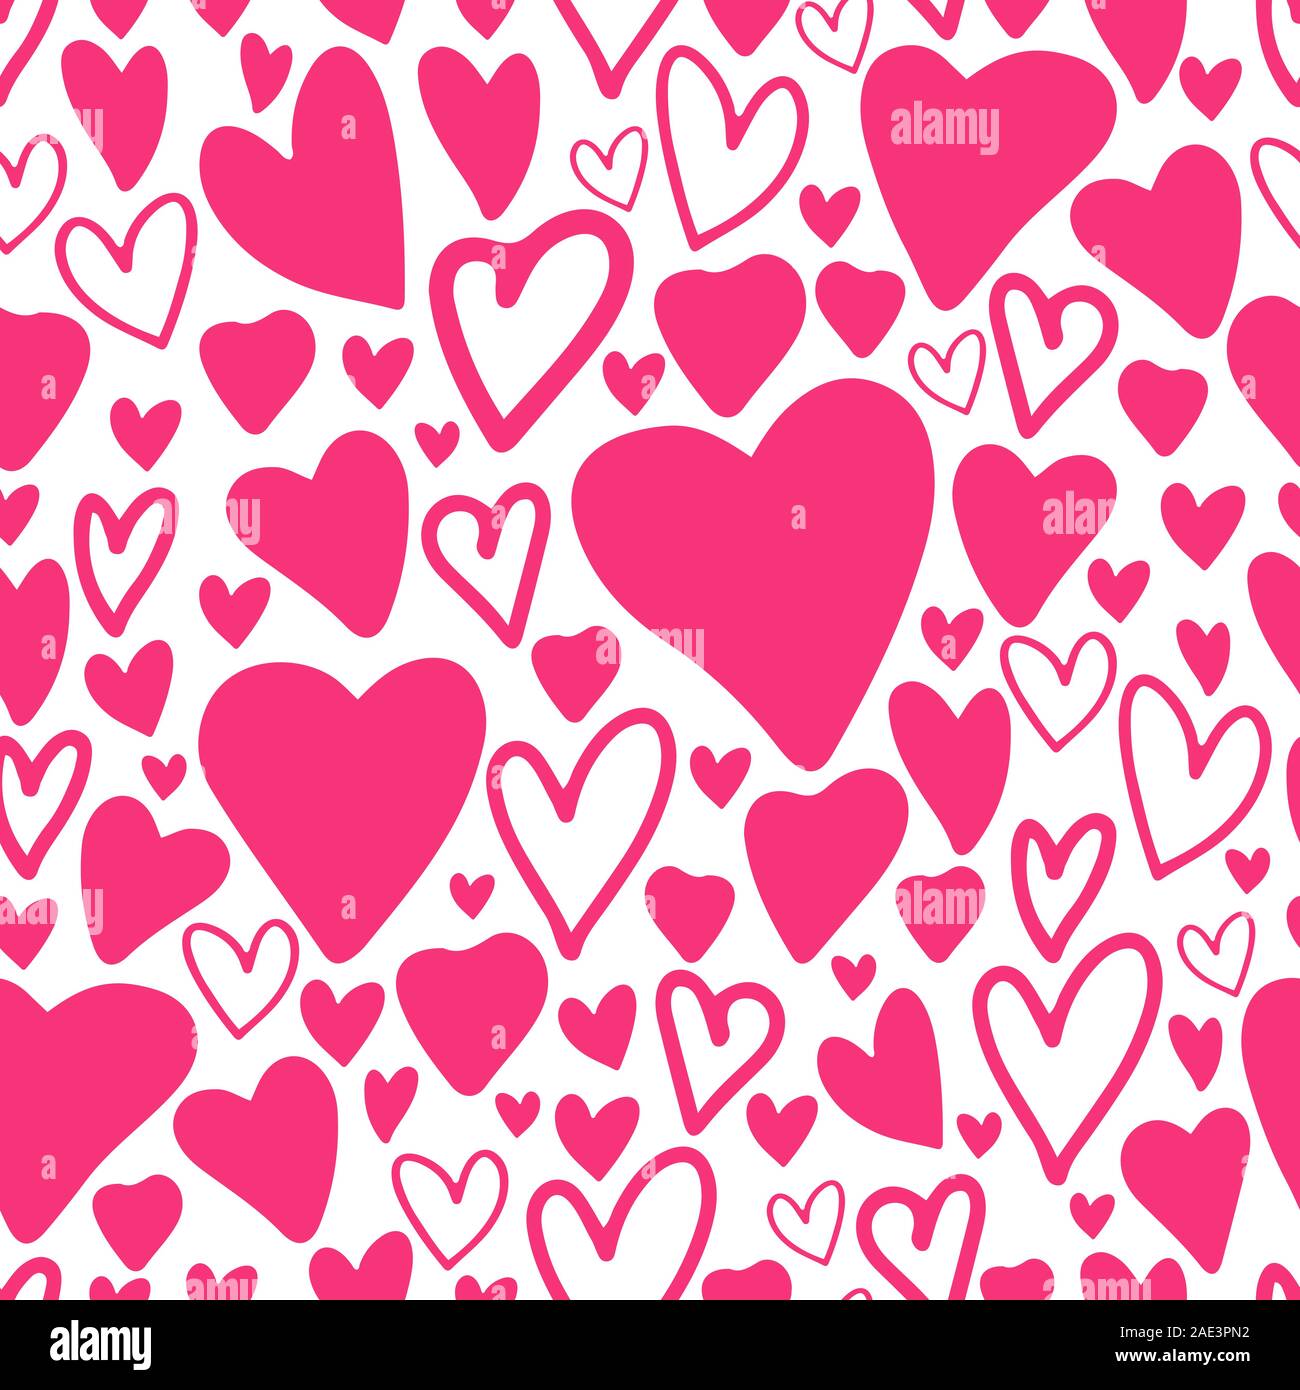 Seamless pattern con cuori rosa isolato su sfondo bianco. Il giorno di San Valentino banner .carino illustrazione vettoriale. Delineare doodle modello.wallp Design Illustrazione Vettoriale